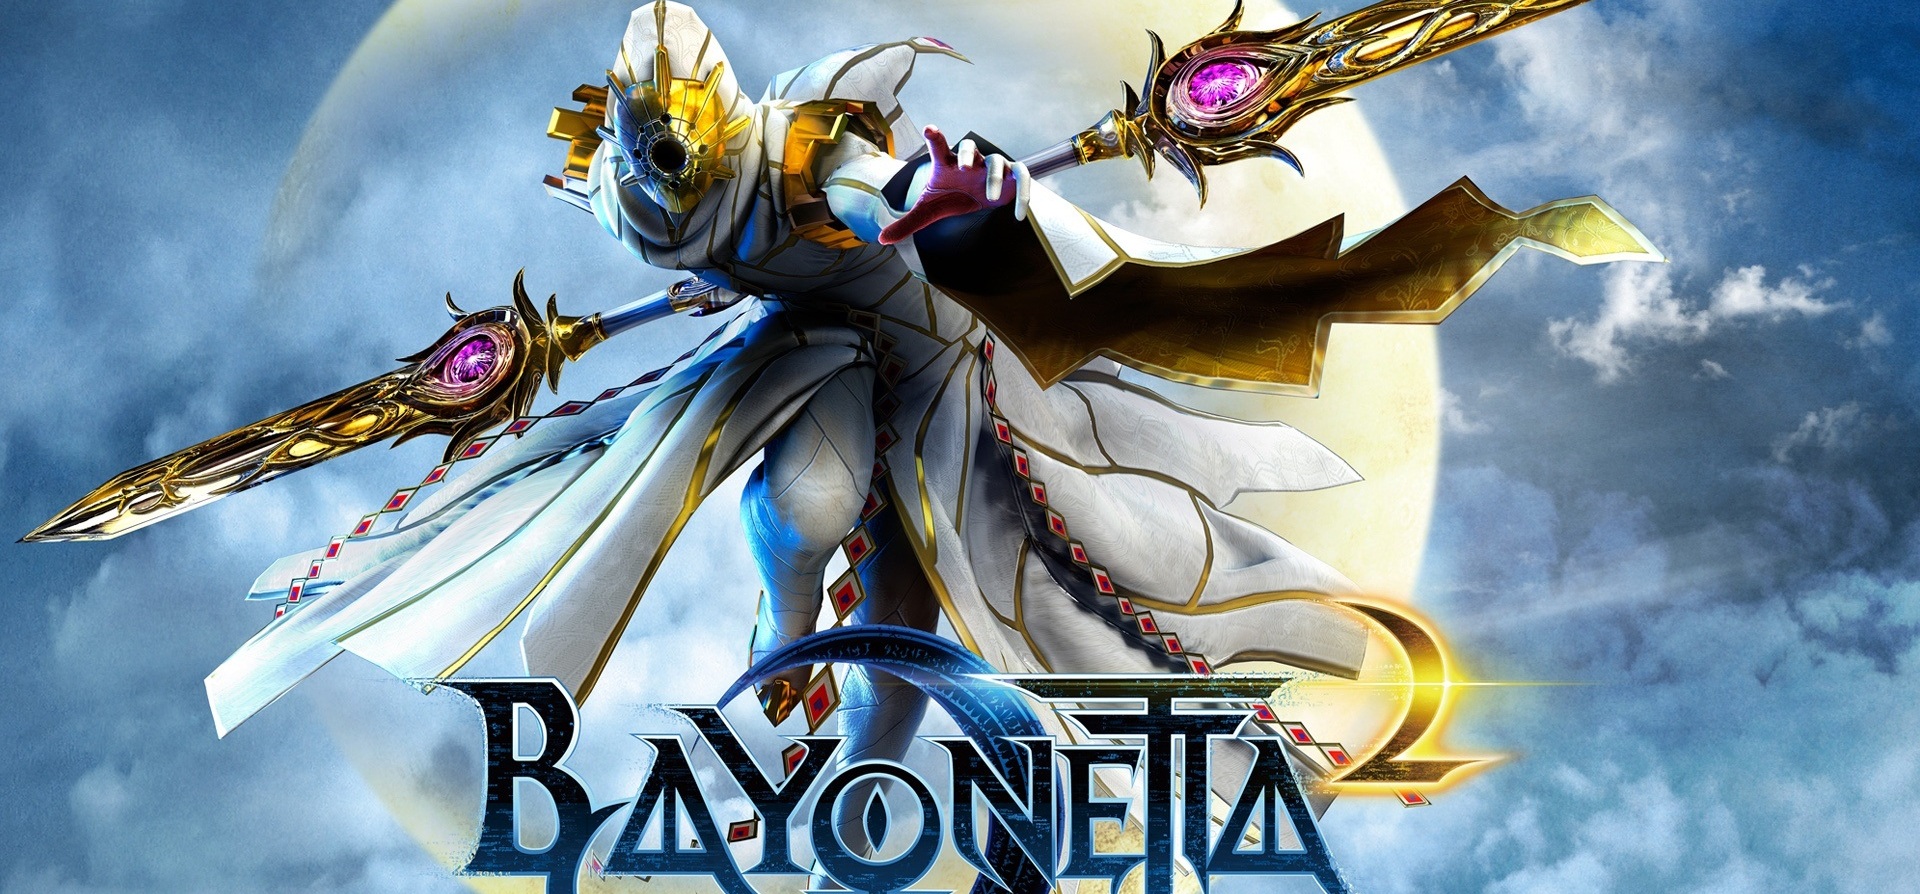 Bayonetta 2 HD Wallpaper